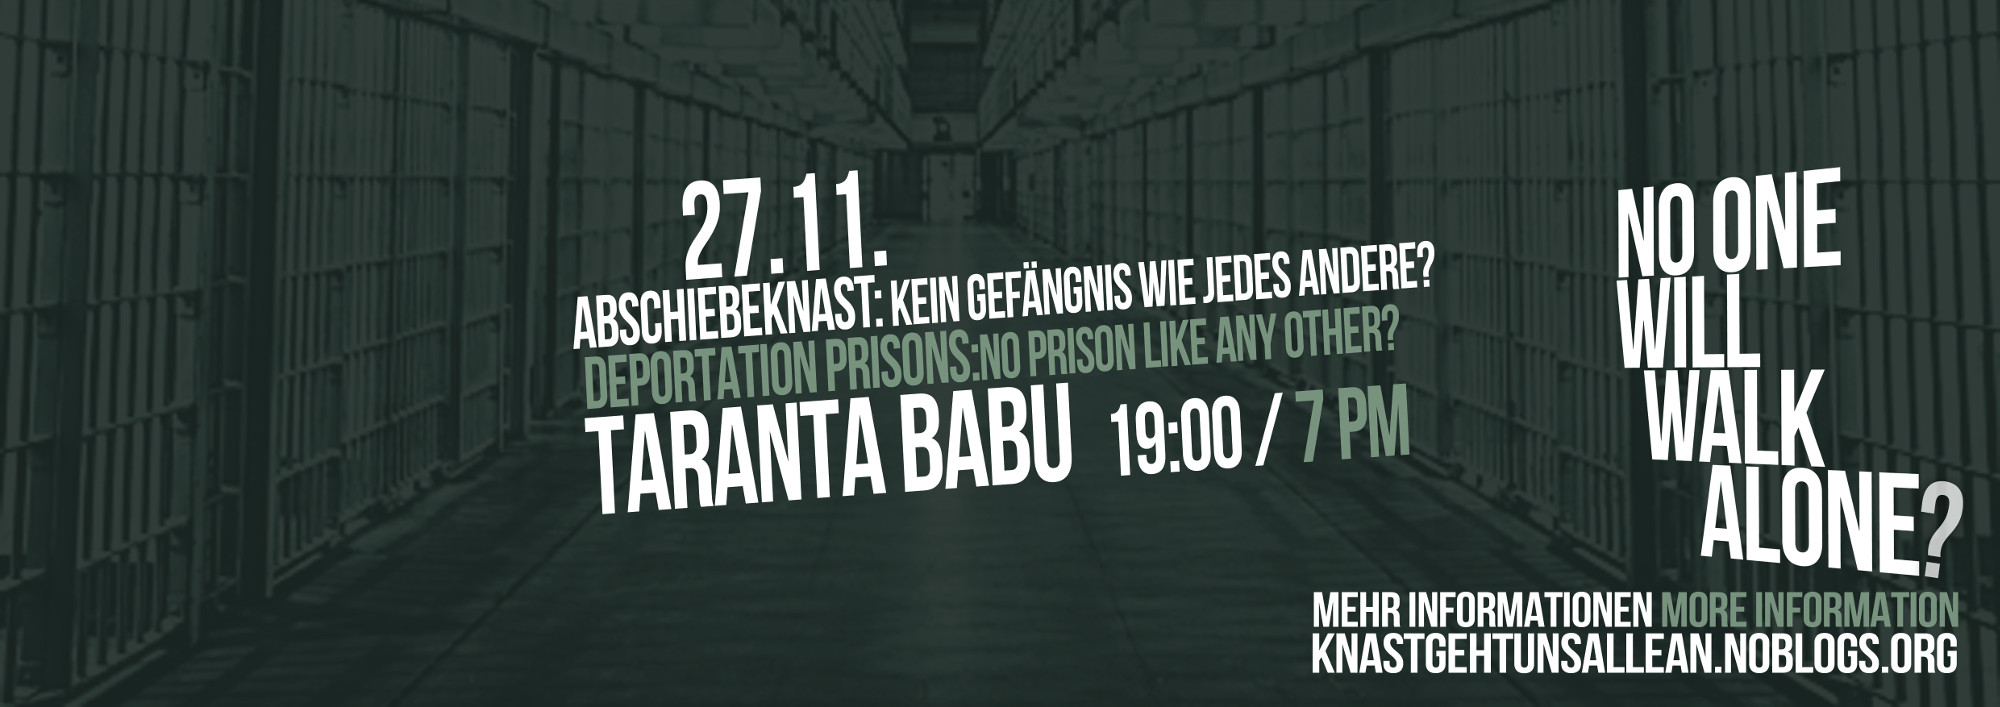 Plakat Abschiebeknast: Kein Gefängnis wie jedes andere? No one will walk alone? 